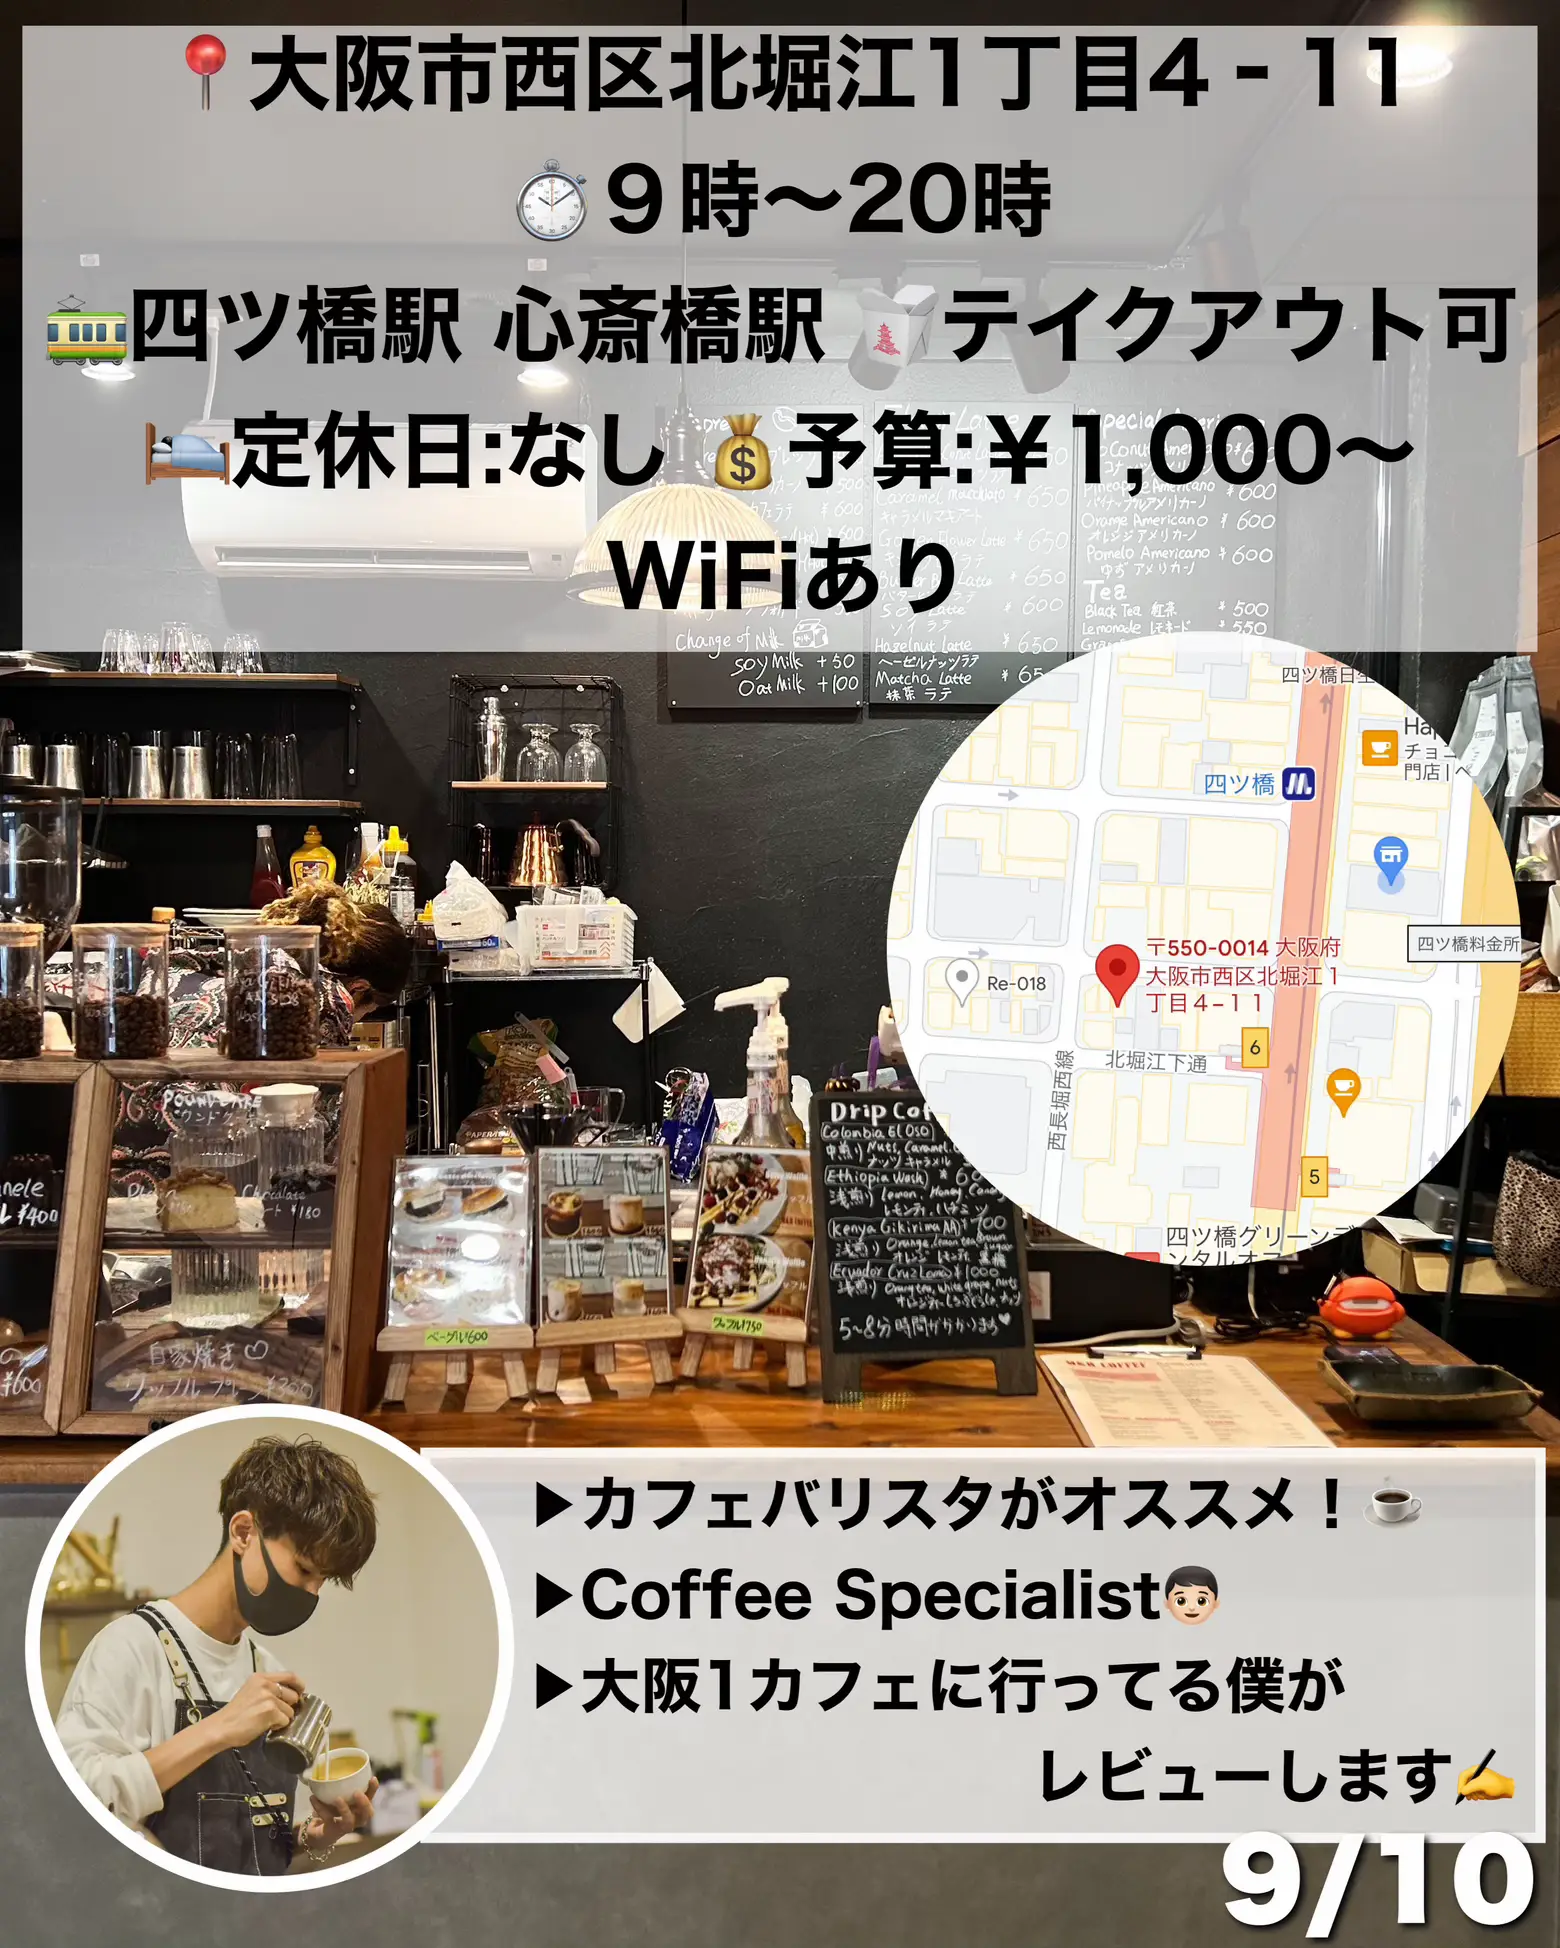 【新店情報】堀江に西海岸風ヴィンテージカフェがOPEN!! 居心地もよく1人でも利用しやすい☝️☕️の画像 (8枚目)